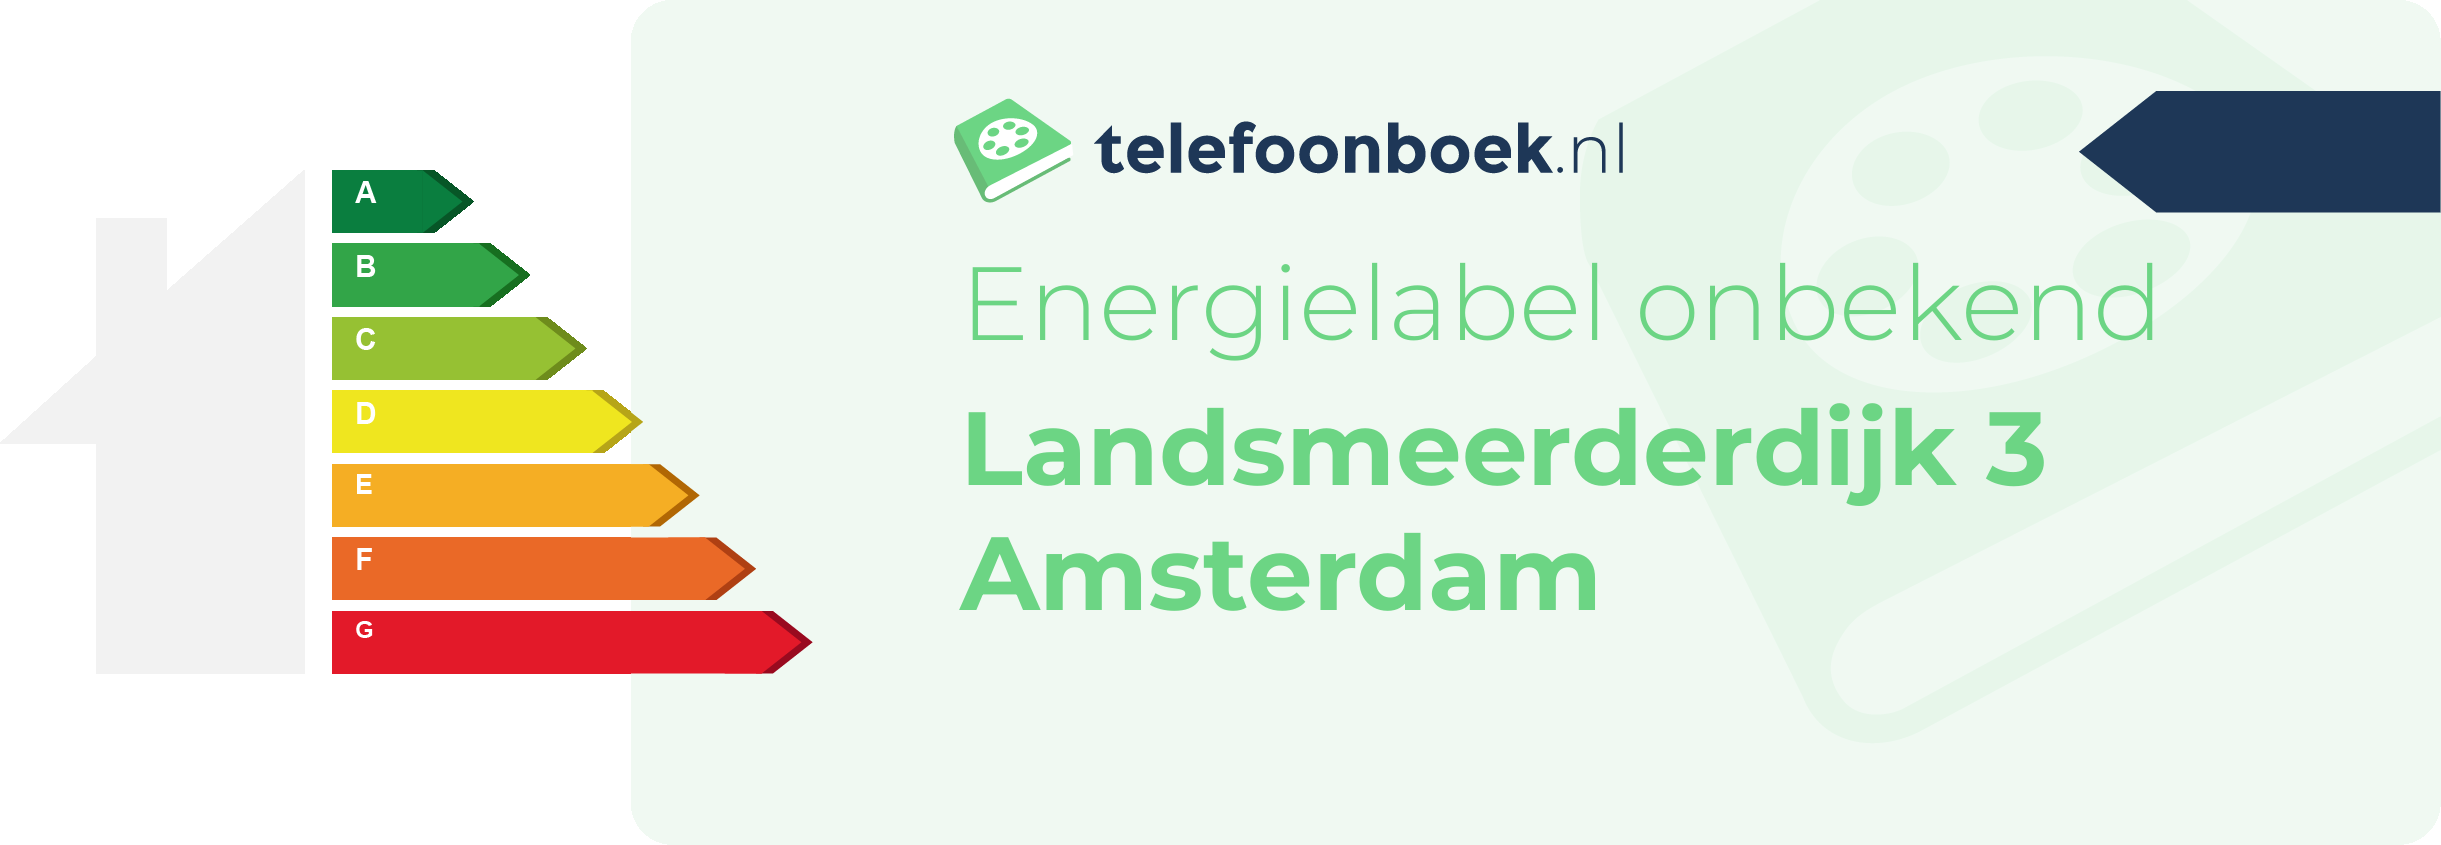 Energielabel Landsmeerderdijk 3 Amsterdam